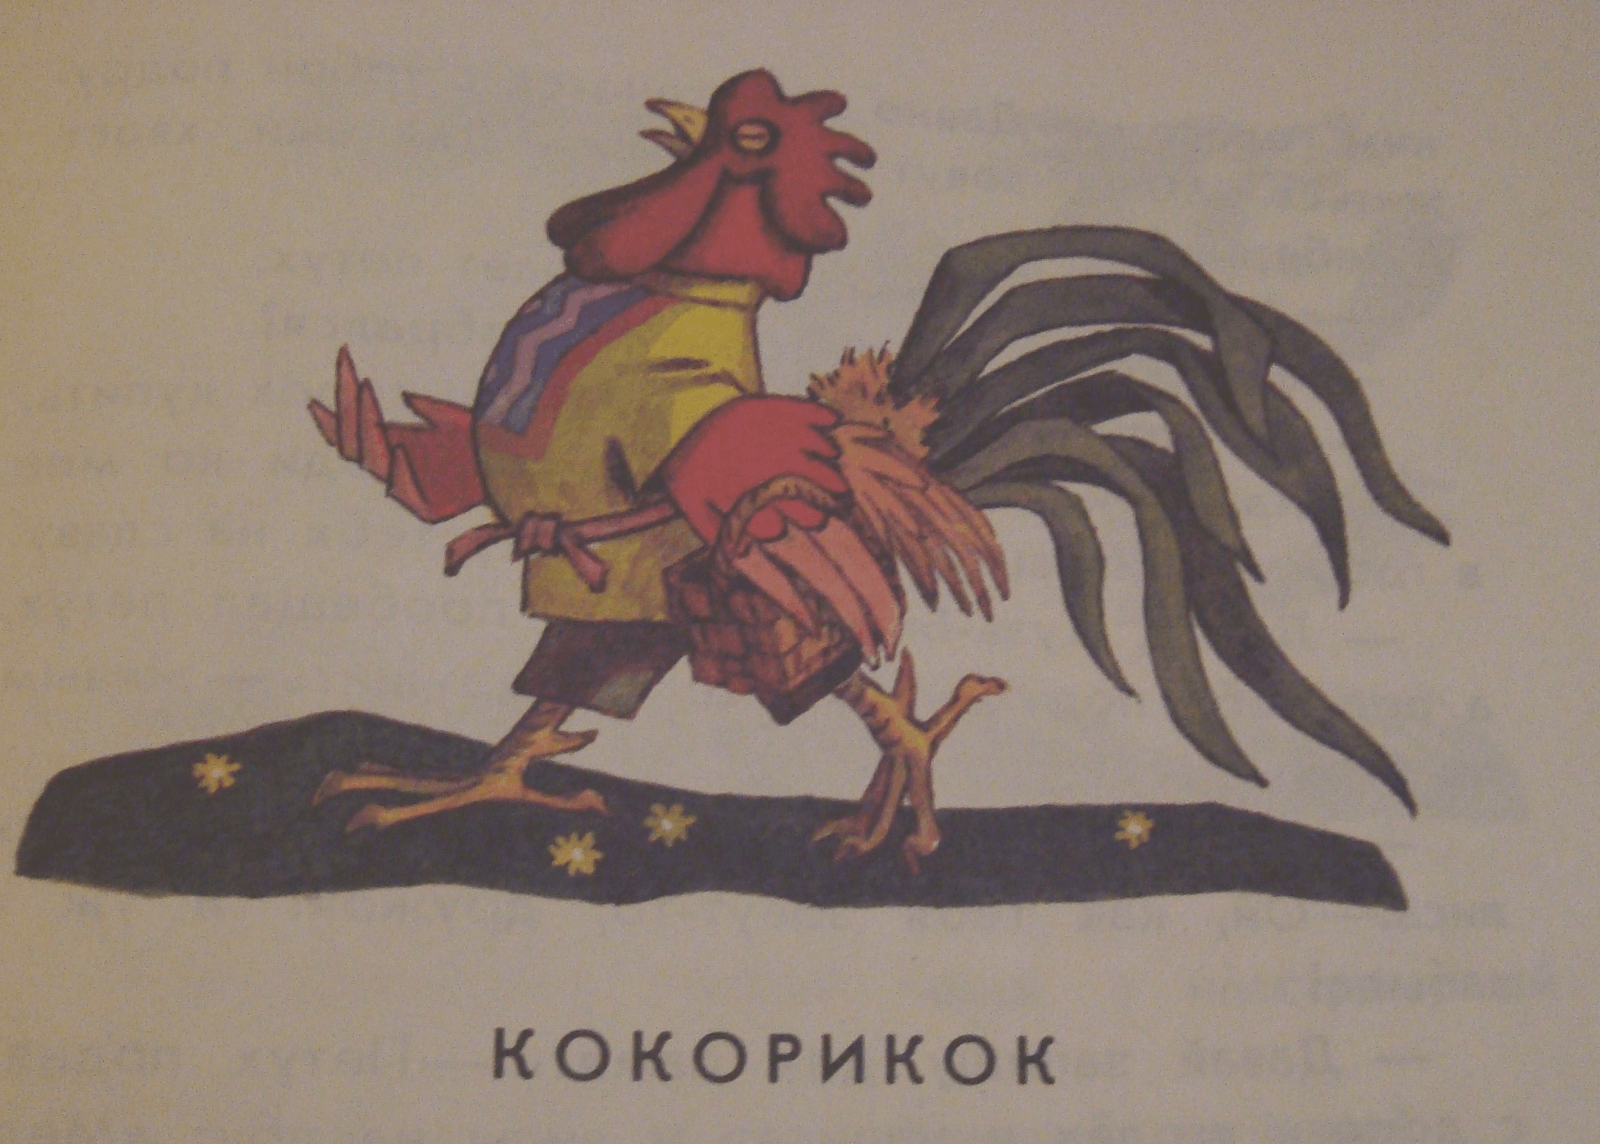 Иллюстрация к сказке Кокорикок